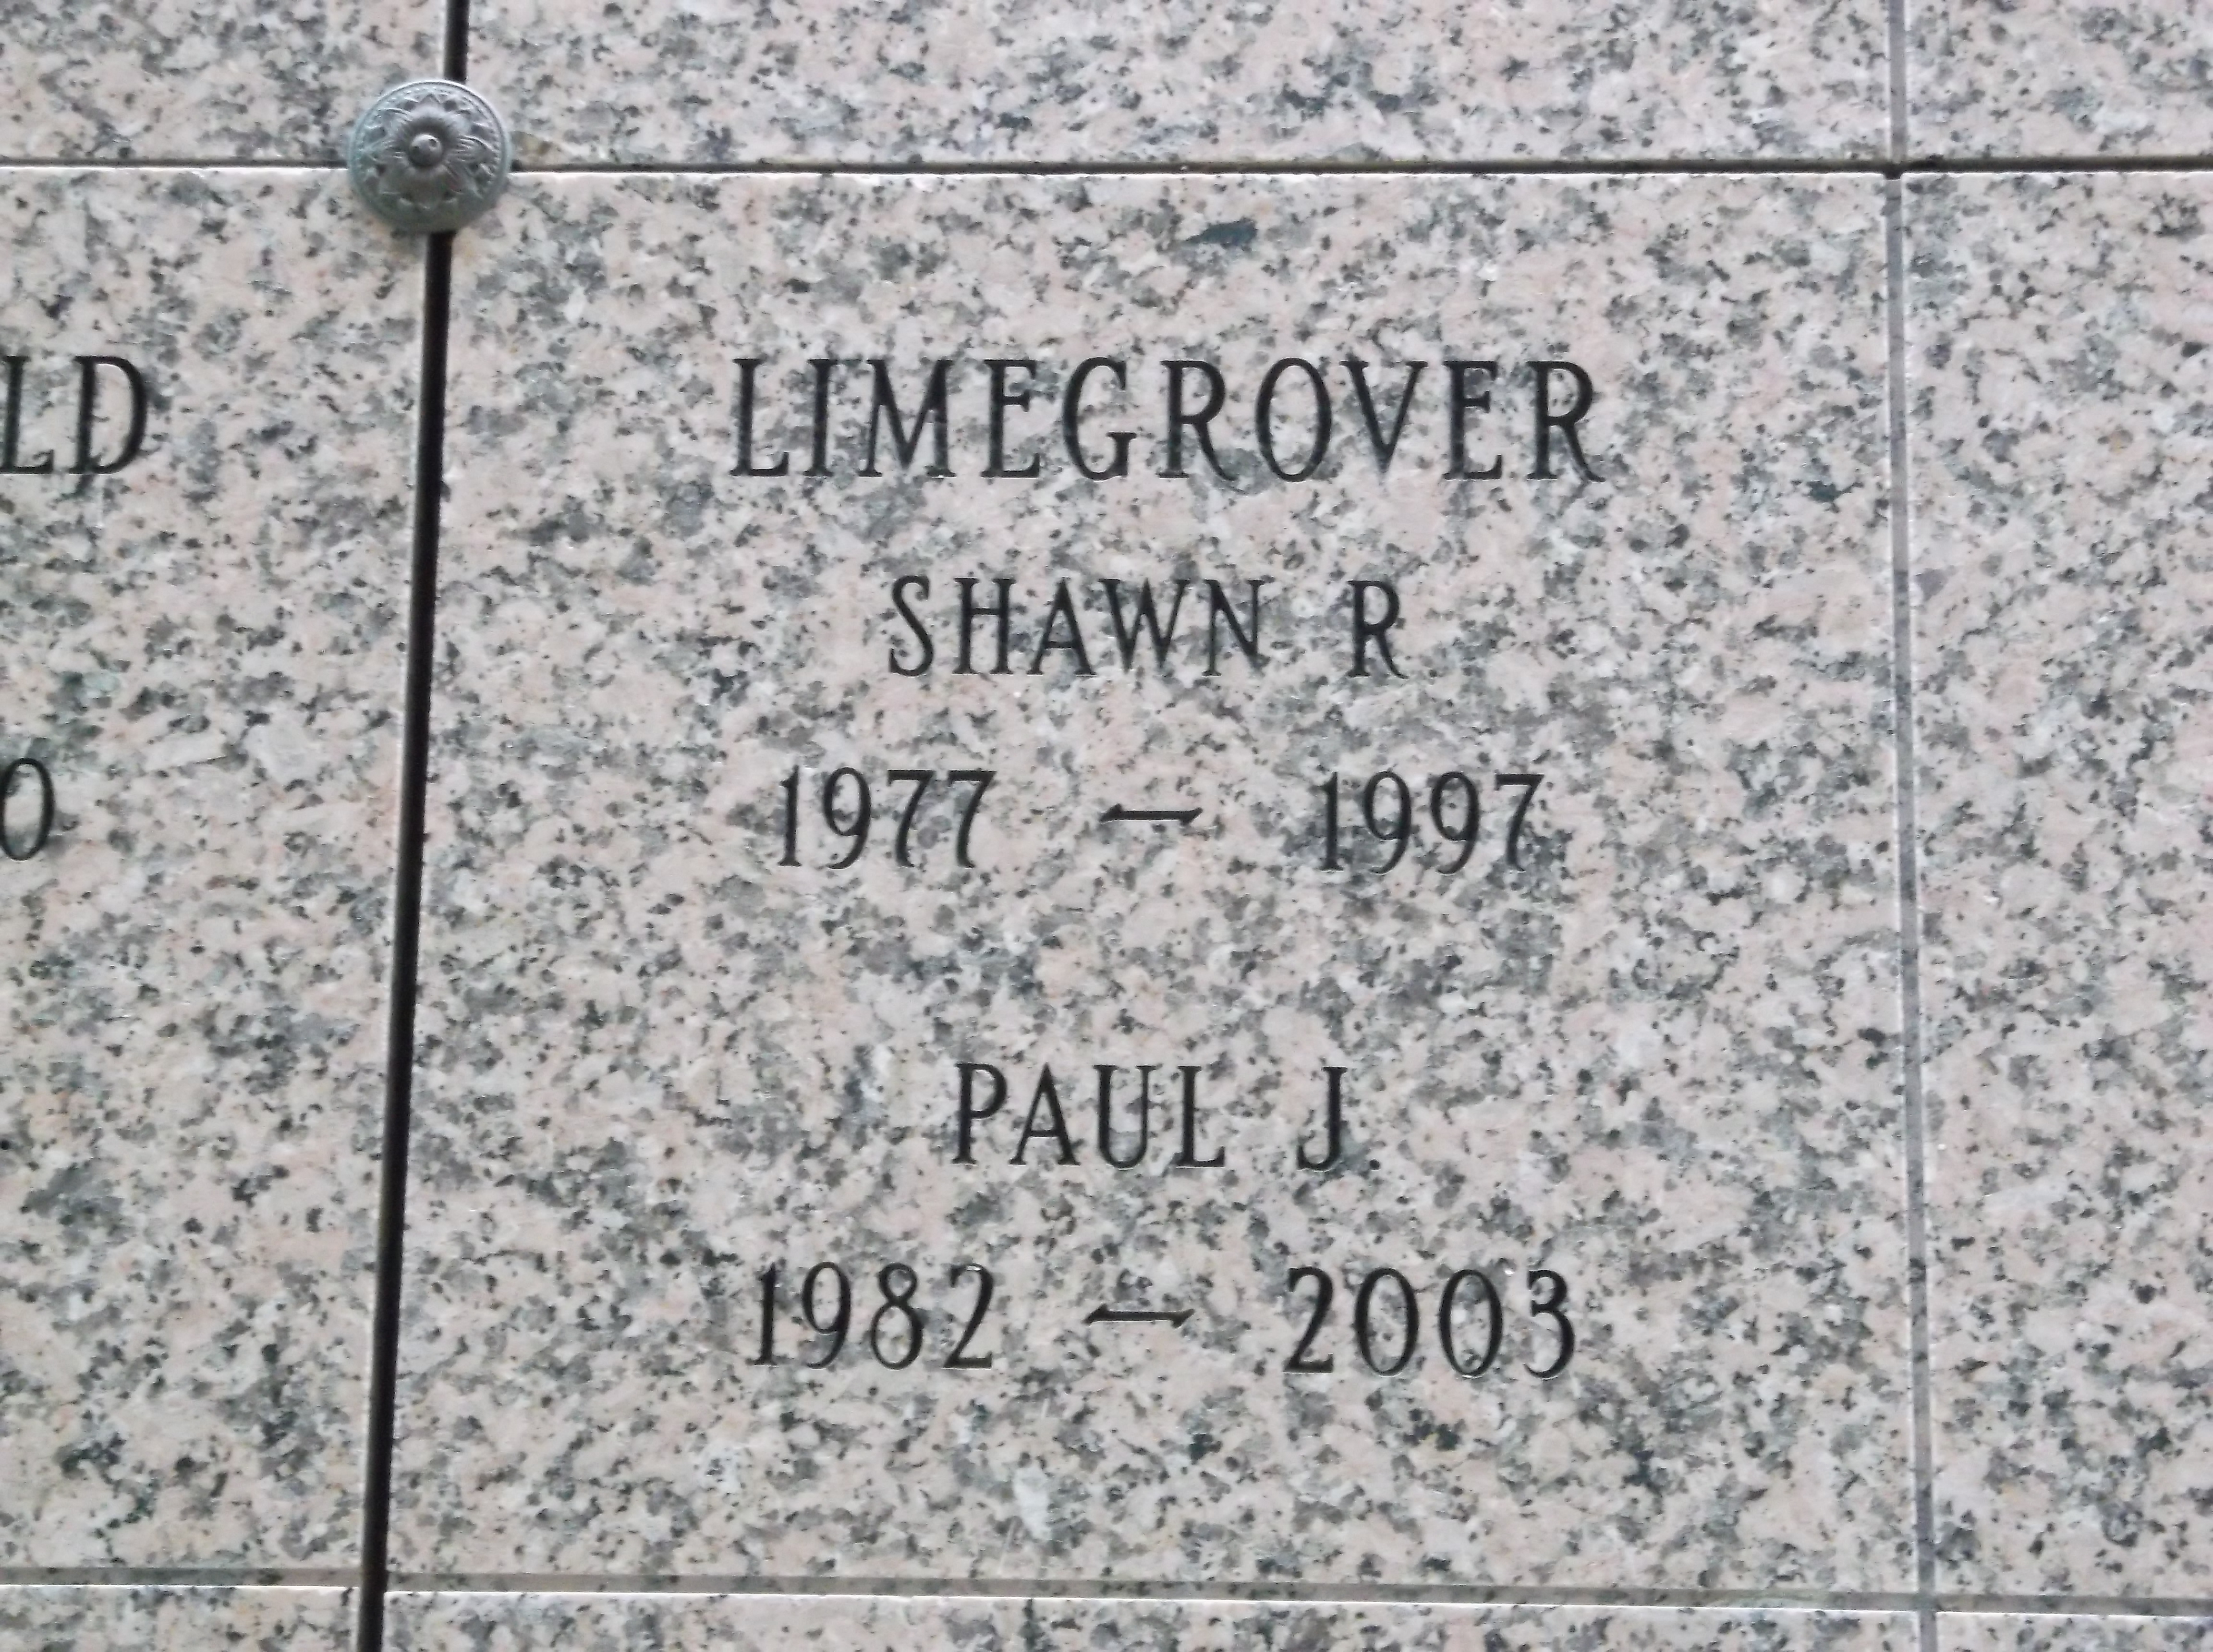 Shawn R Limegrover